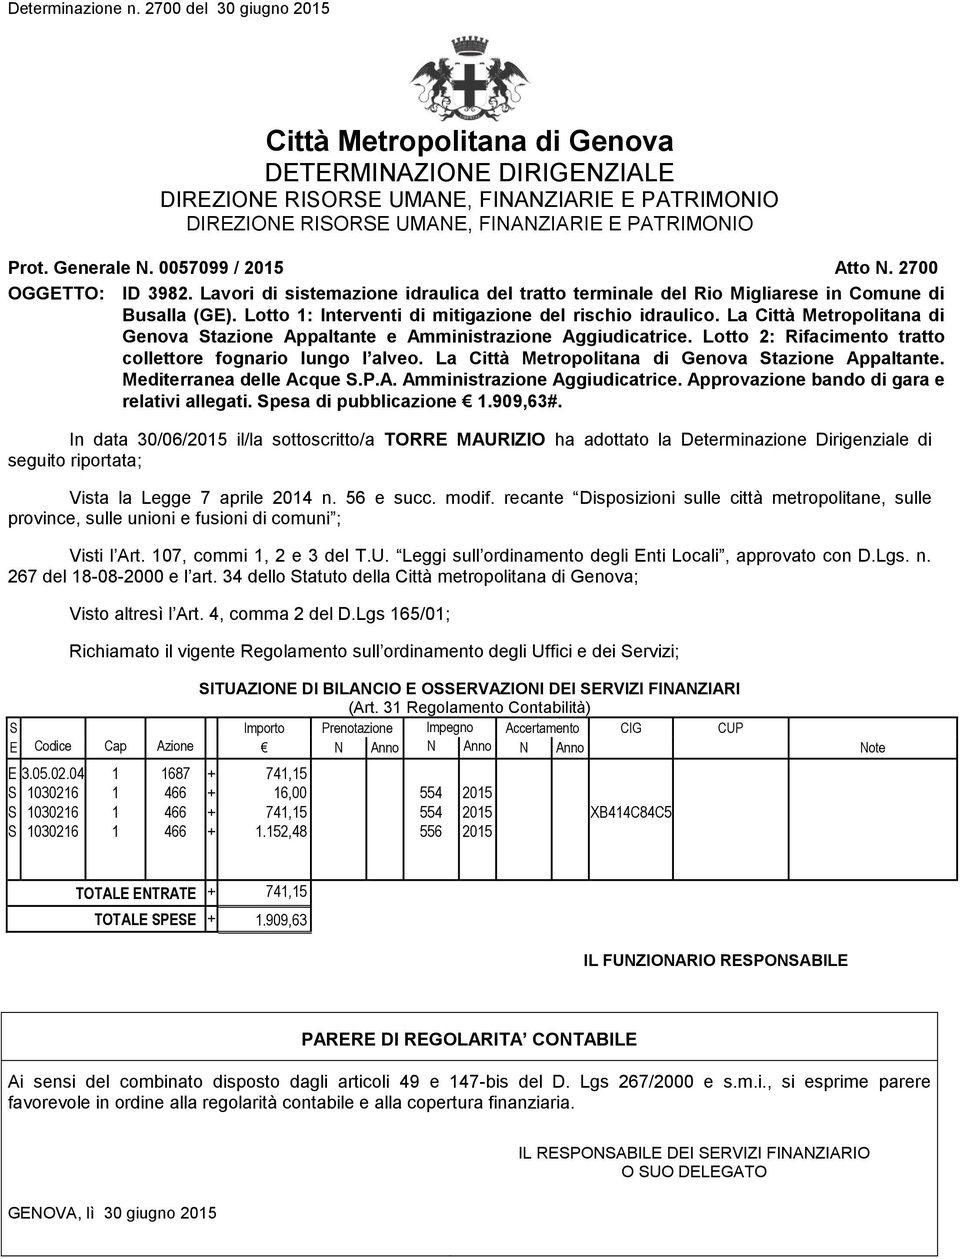 Lotto : Interventi di mitigazione del rischio idraulico. La Città Metropolitana di Genova tazione Appaltante e Amministrazione Aggiudicatrice.